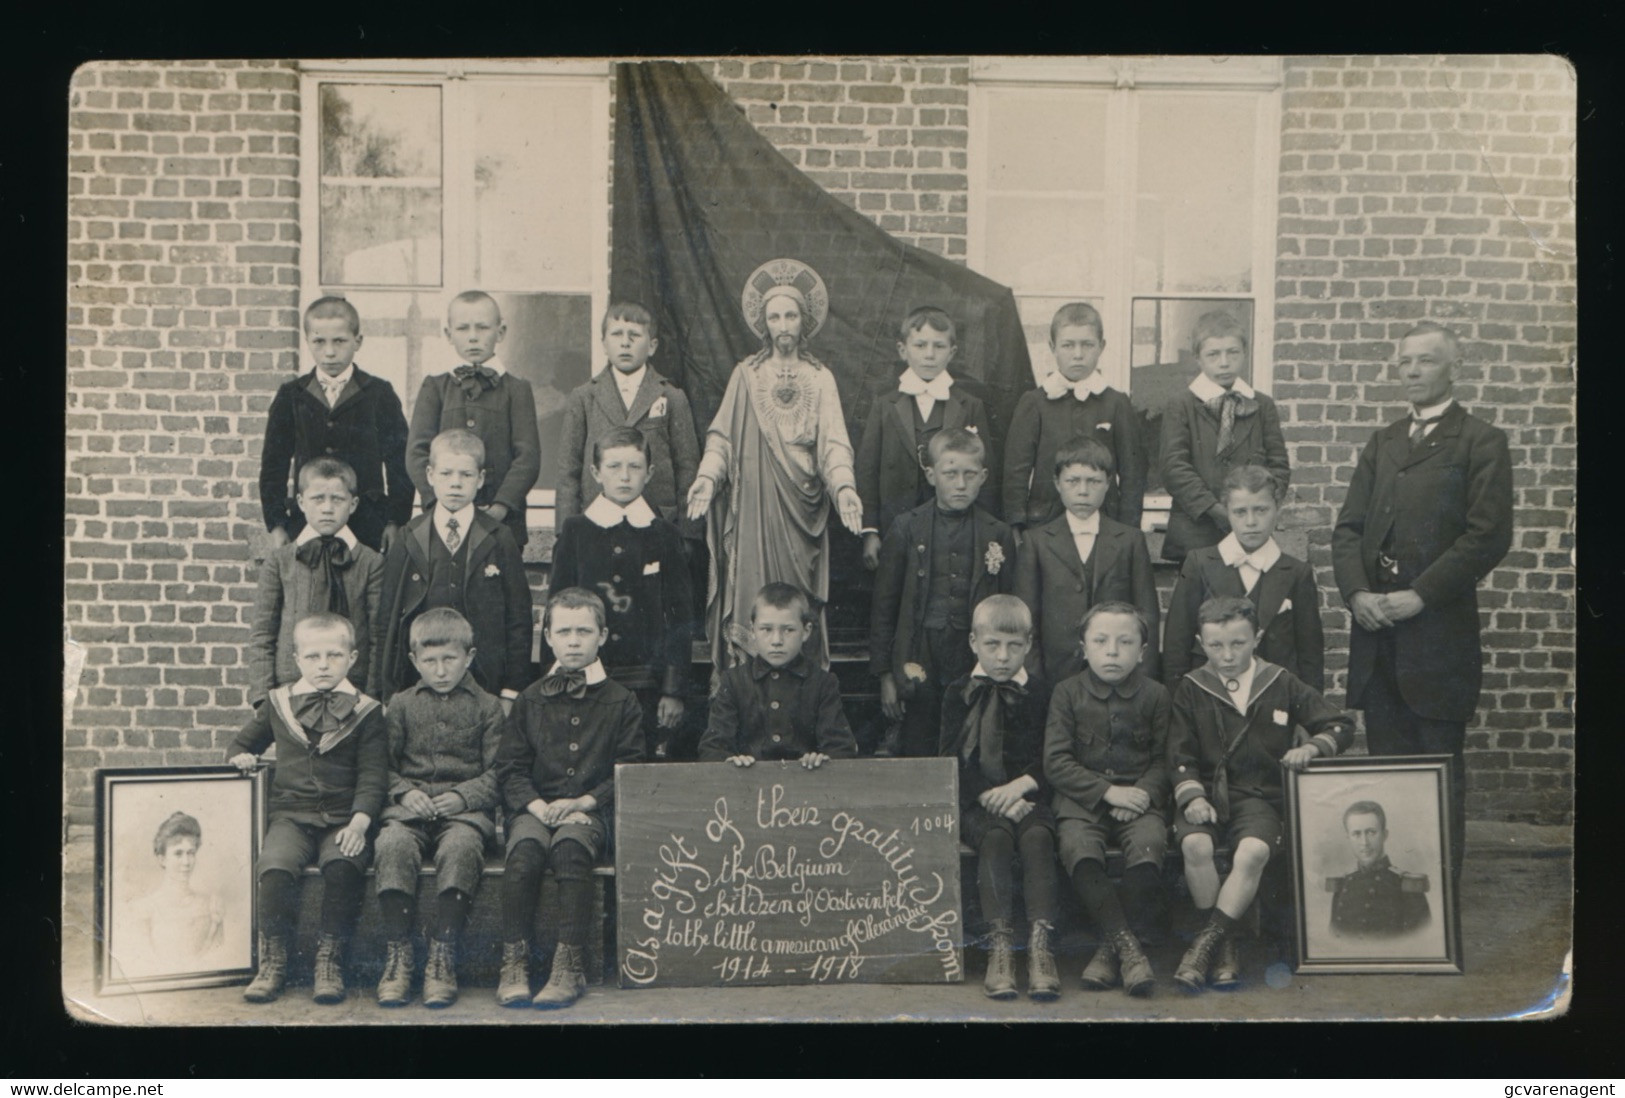 OOSTWINKEL  FOTOKAART  THE BELGIUM CHILDREN OF OOSTWINKEL THO THE LITTLE AMERICAN OF ALEXANDREI 1914_1918   2 SCANS - Zomergem